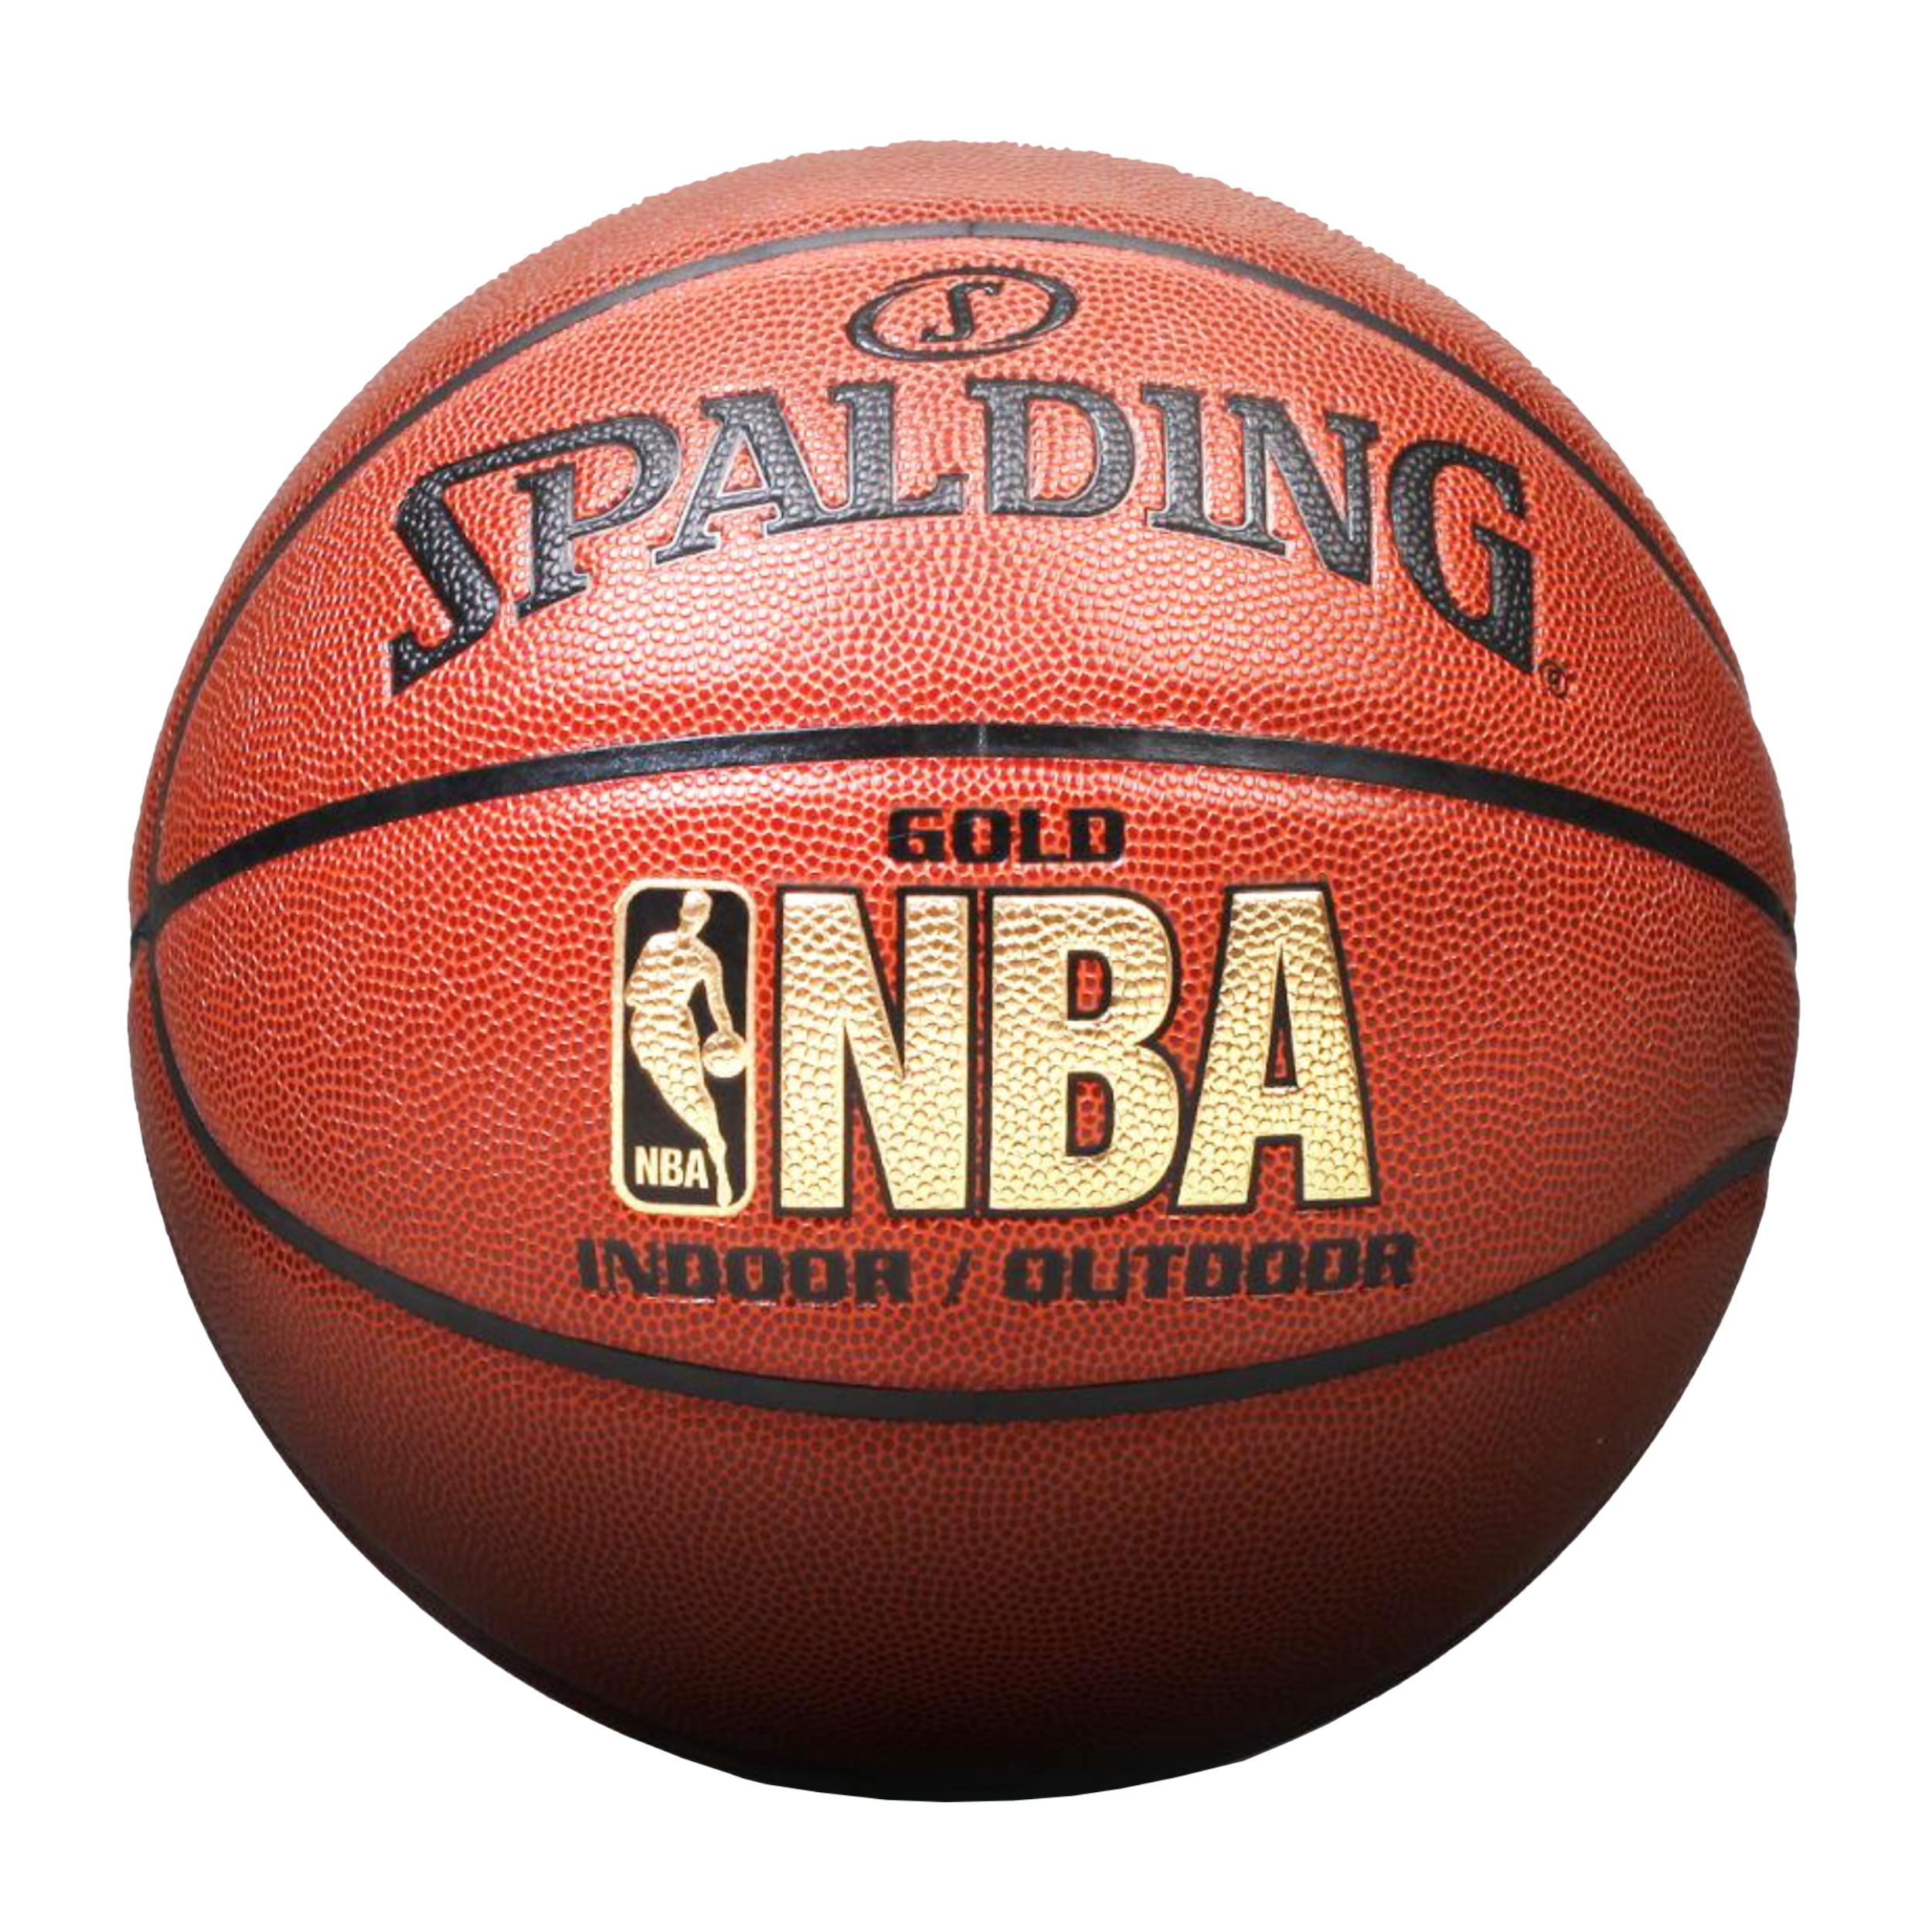 توپ بسکتبال اسپالدینگ مدل GD NBA -  - 1